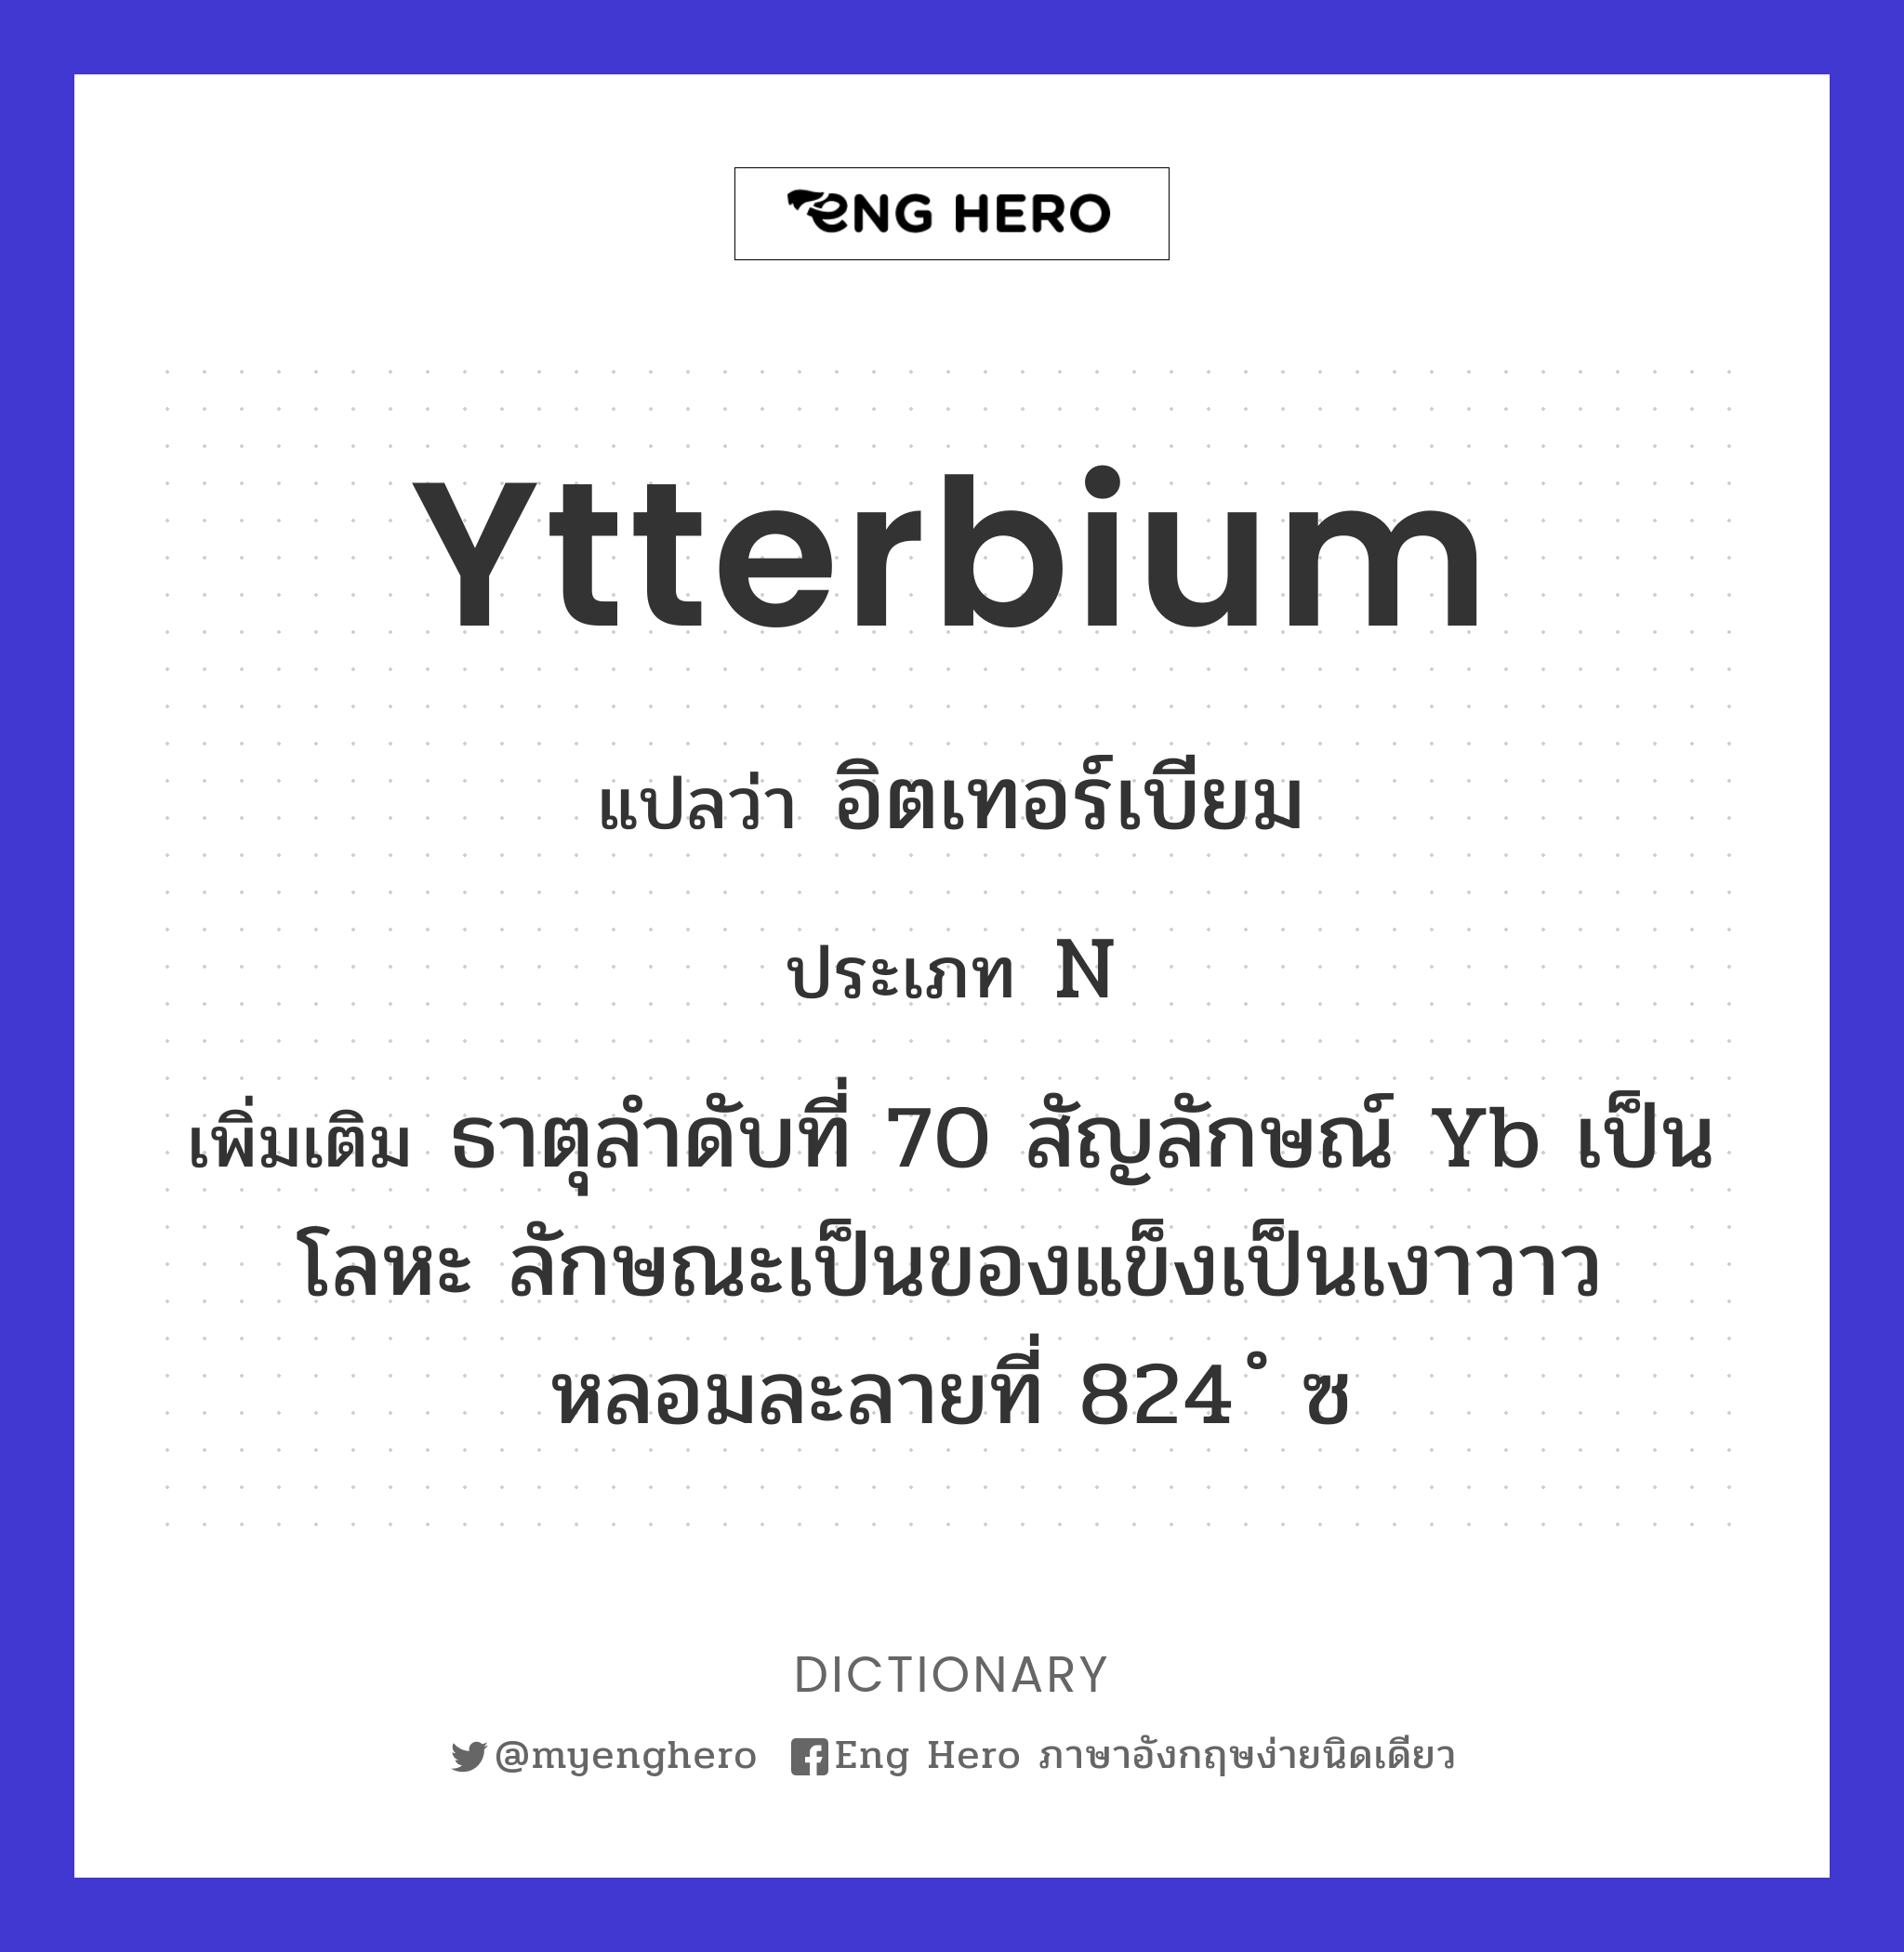 ytterbium